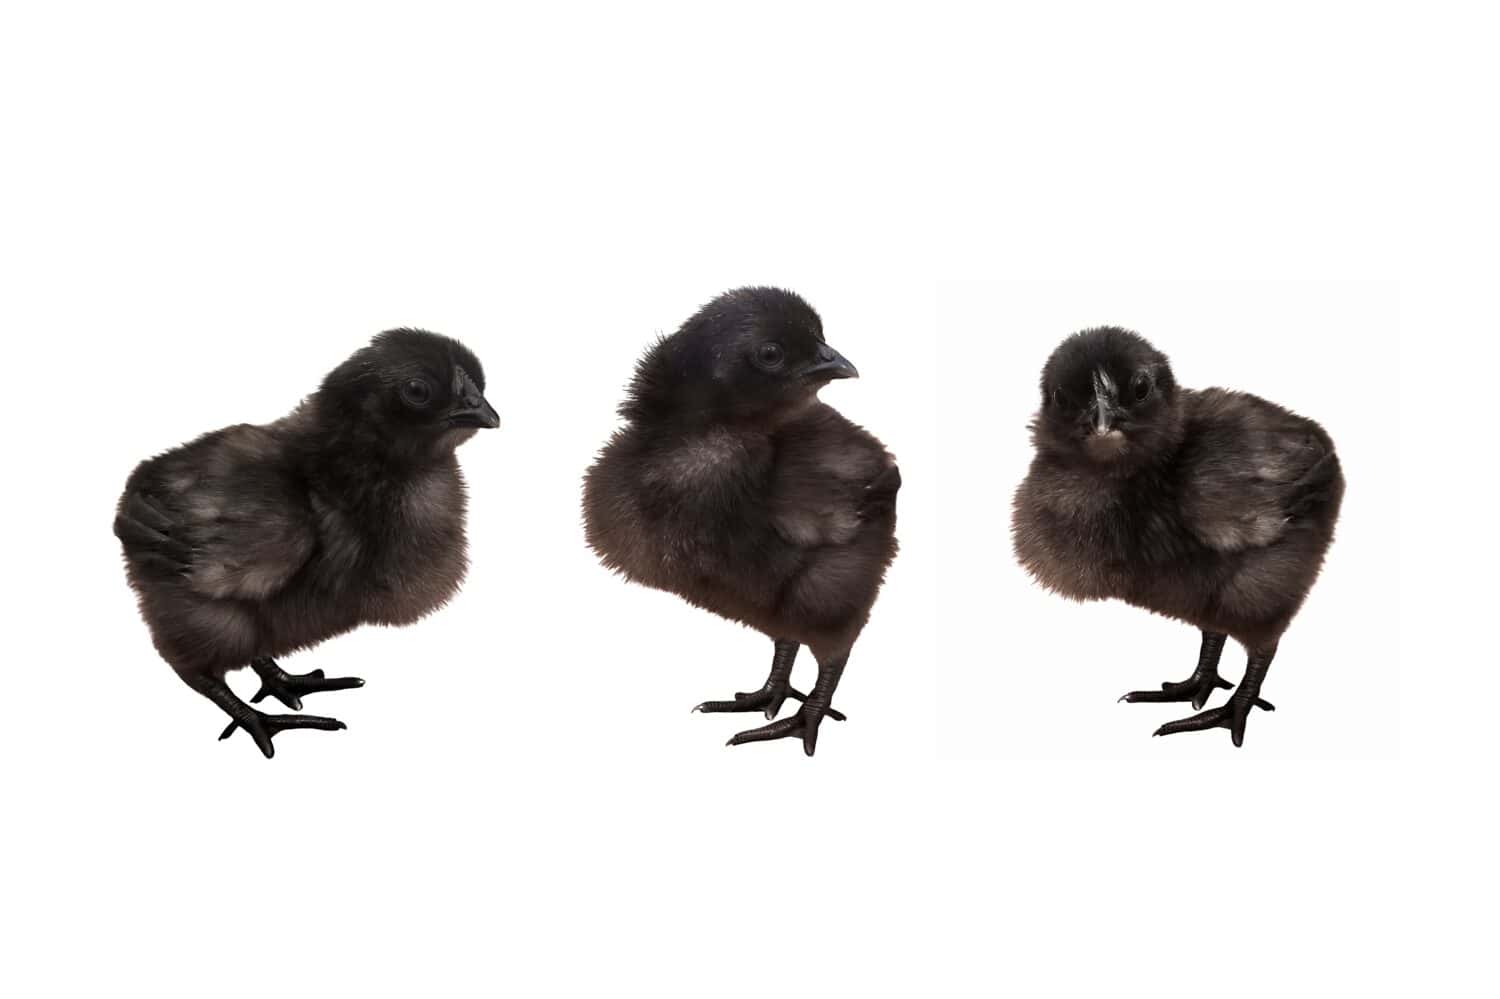 Tre pulcini neri in posa davanti a uno sfondo bianco. Pollame giovane. Polli di razza cinese con piume e pelle nere.